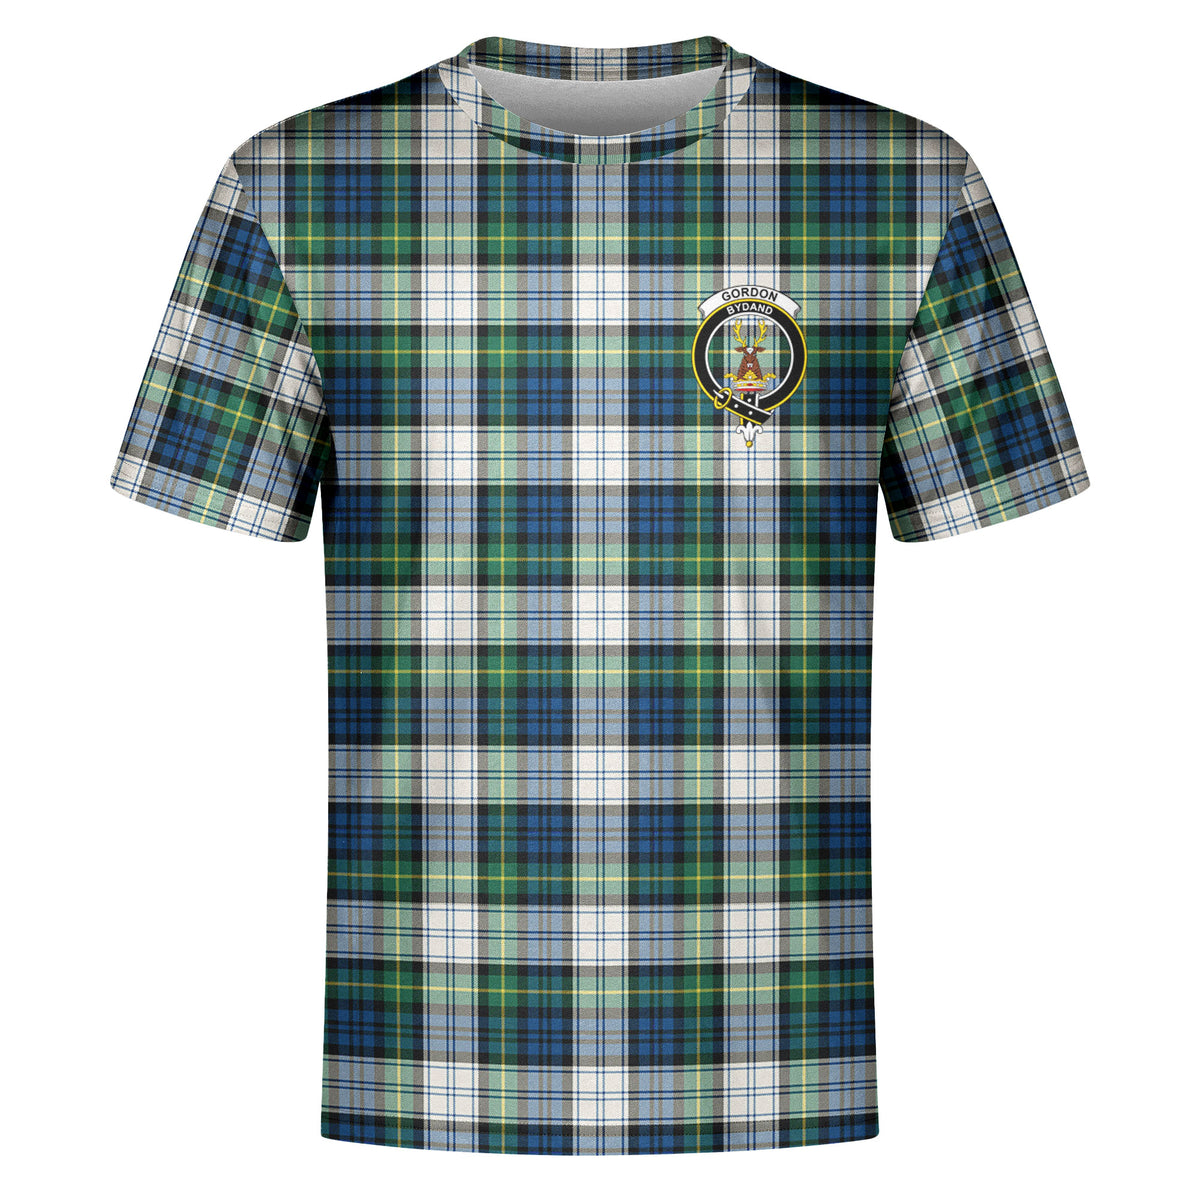 Gordon Dress Ancient Tartan Crest T-shirt